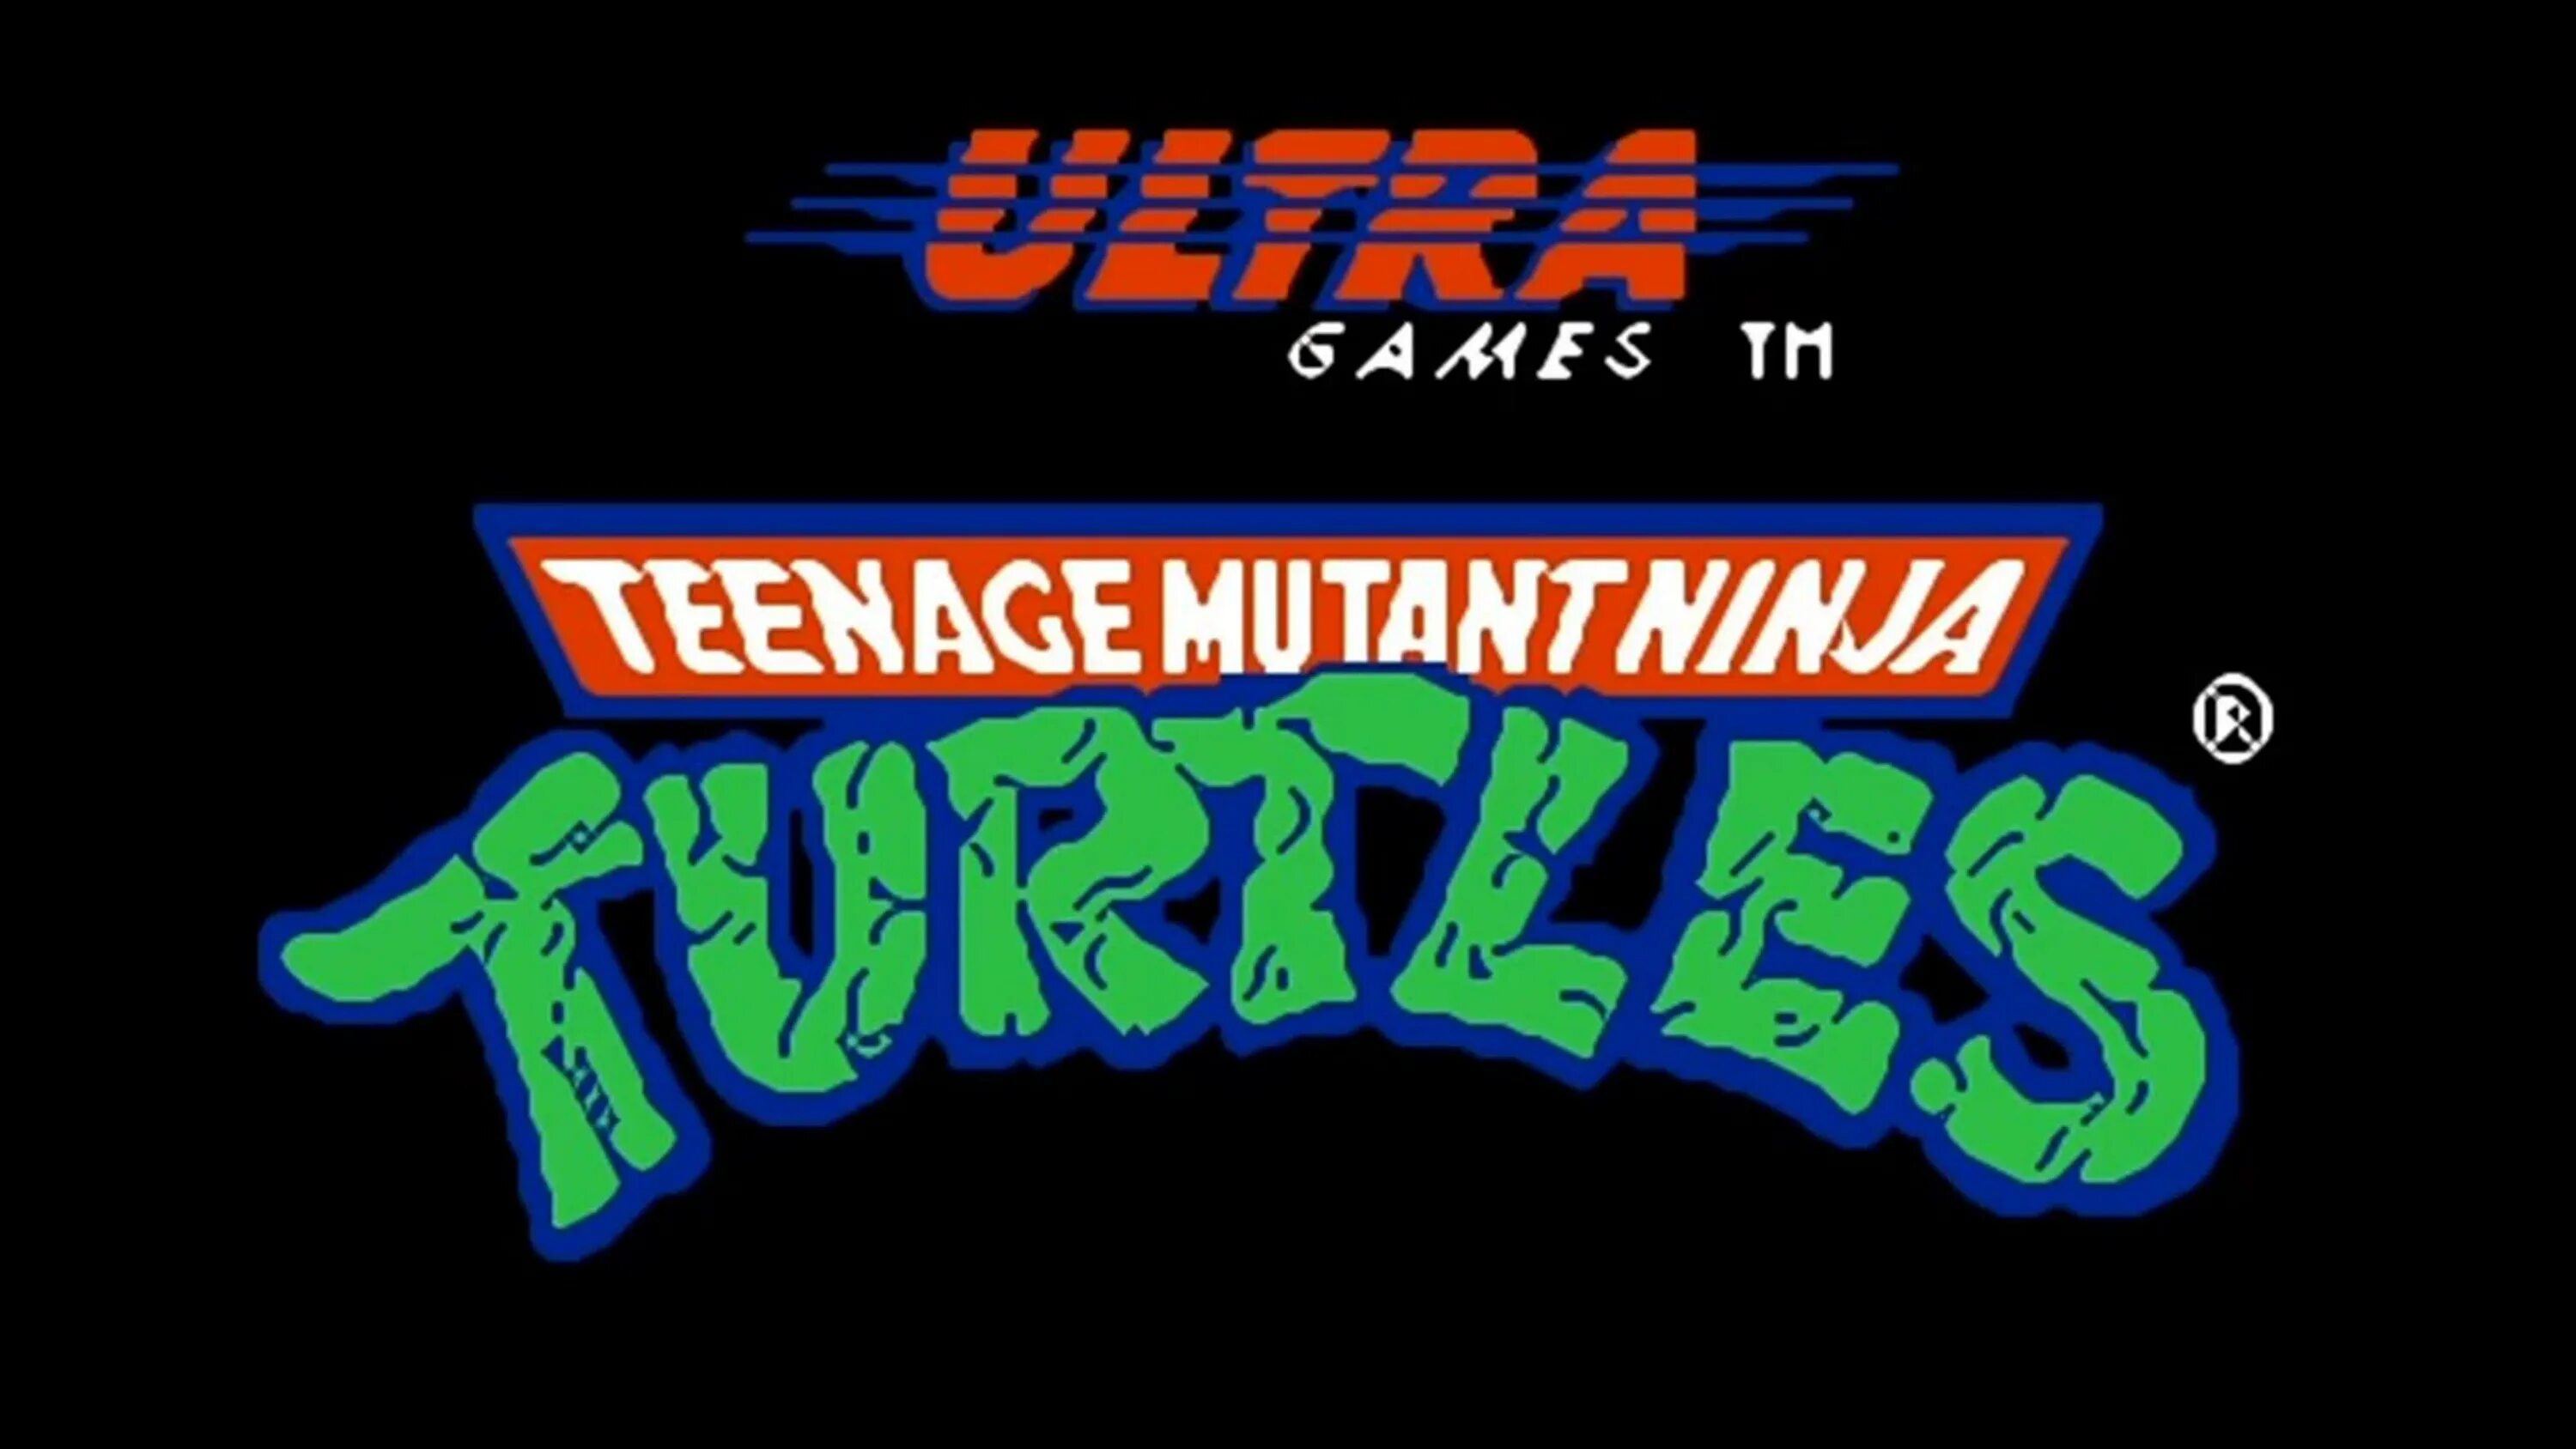 Turtles nes. Teenage Mutant Ninja Turtles NES. Teenage Mutant Ninja Turtles 1 Dendy. Teenage Mutant Ninja Turtles NES 1989. Teenage Mutant Ninja Turtles игра 1989 Денди.